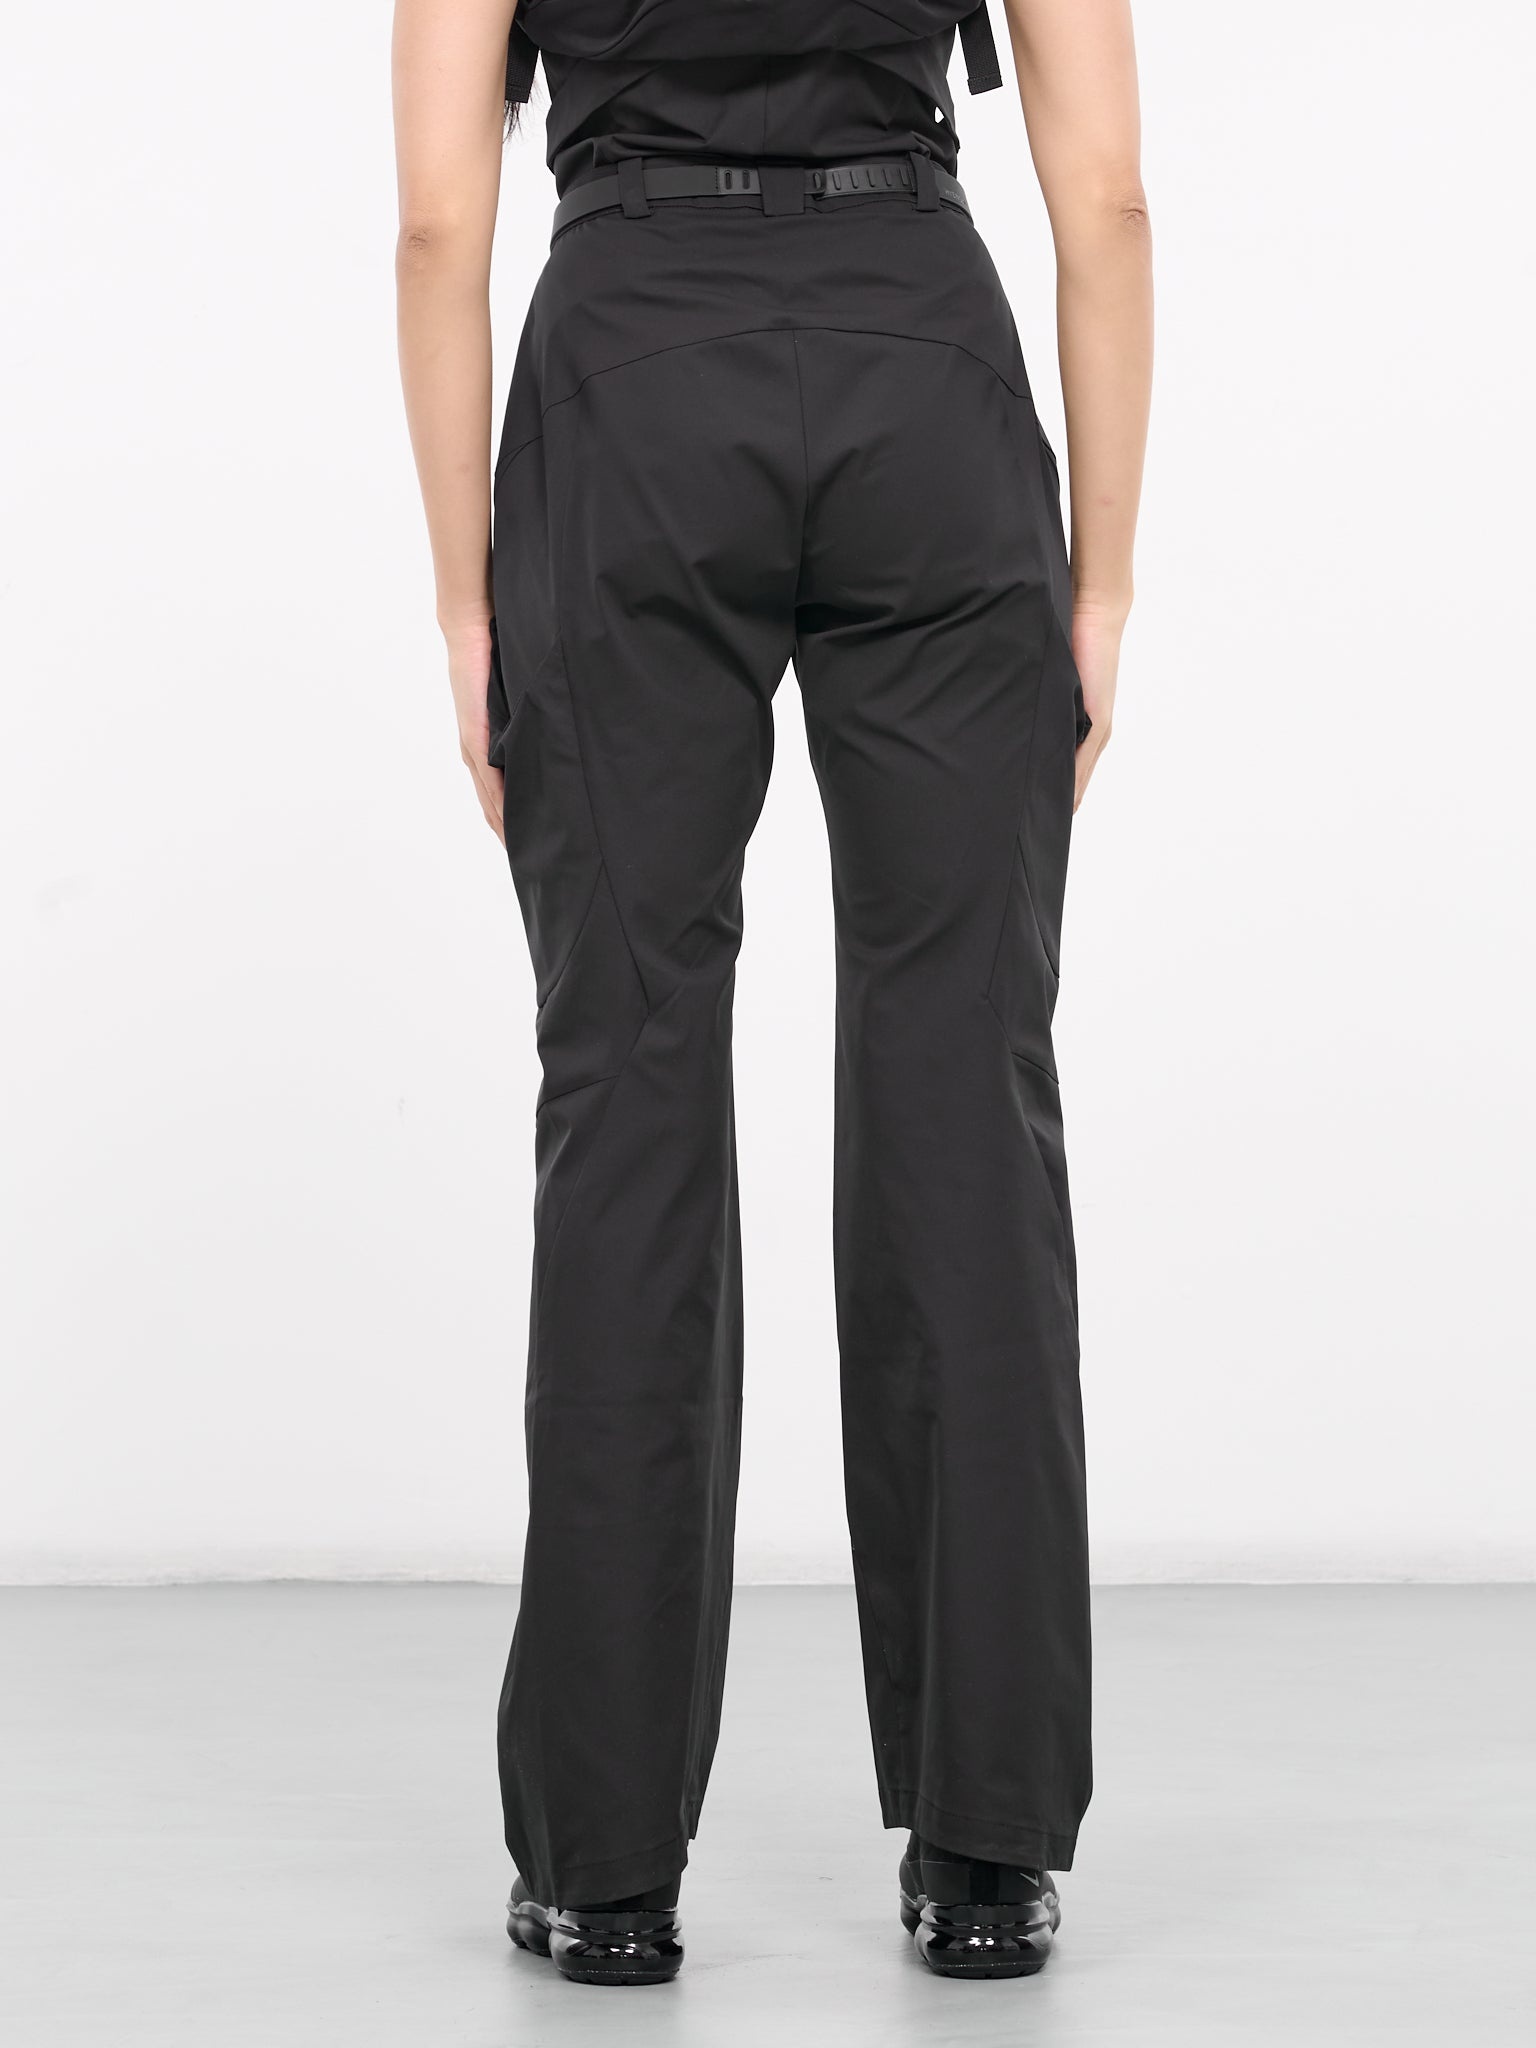 Belted Pocket Pants - 3